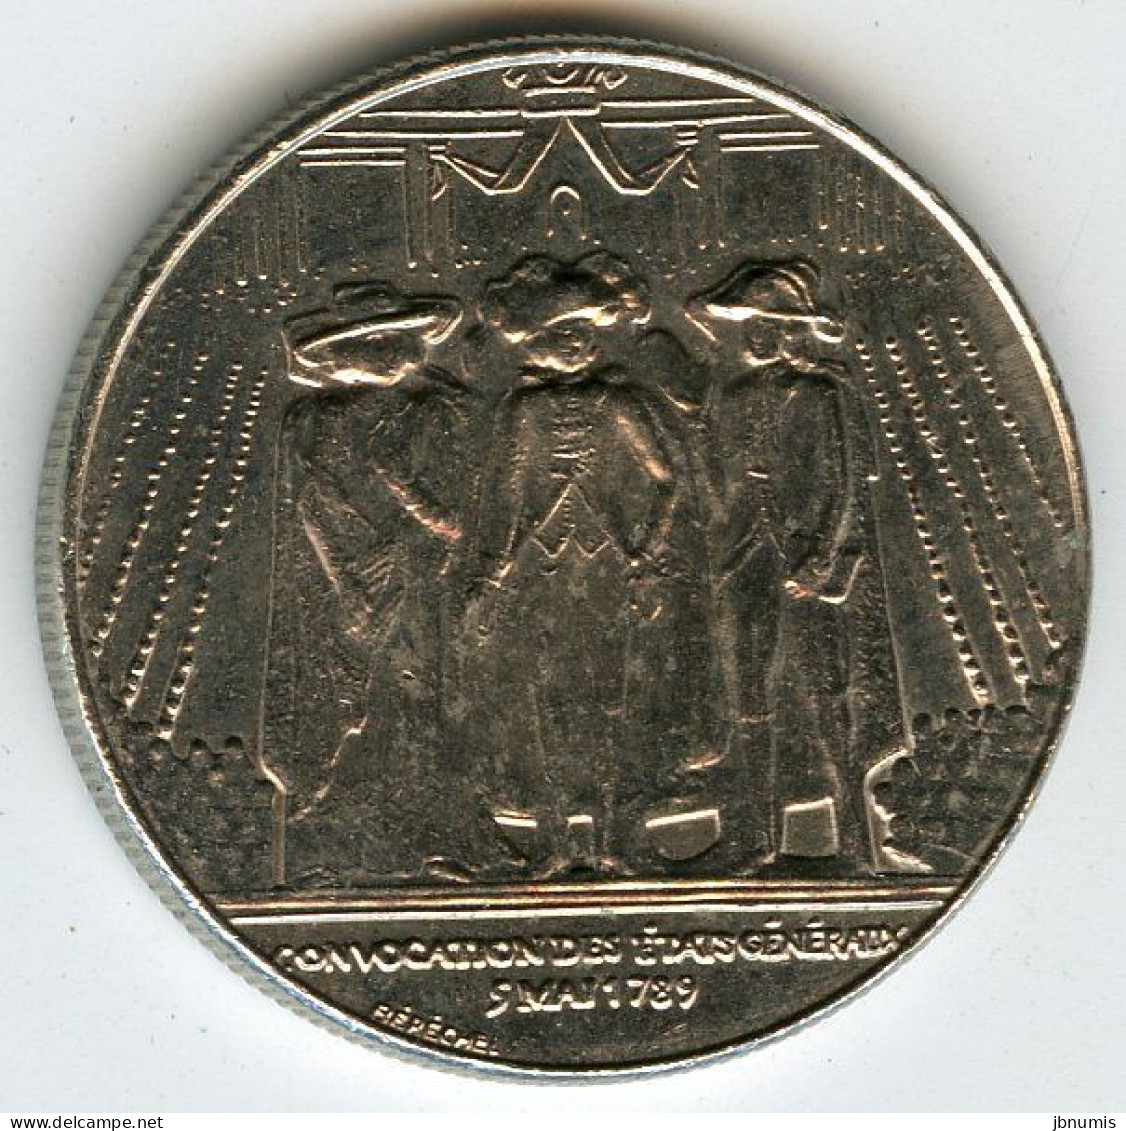 France 1 Franc 1989 200 Ans De La République GAD 477 KM 967 - 1 Franc